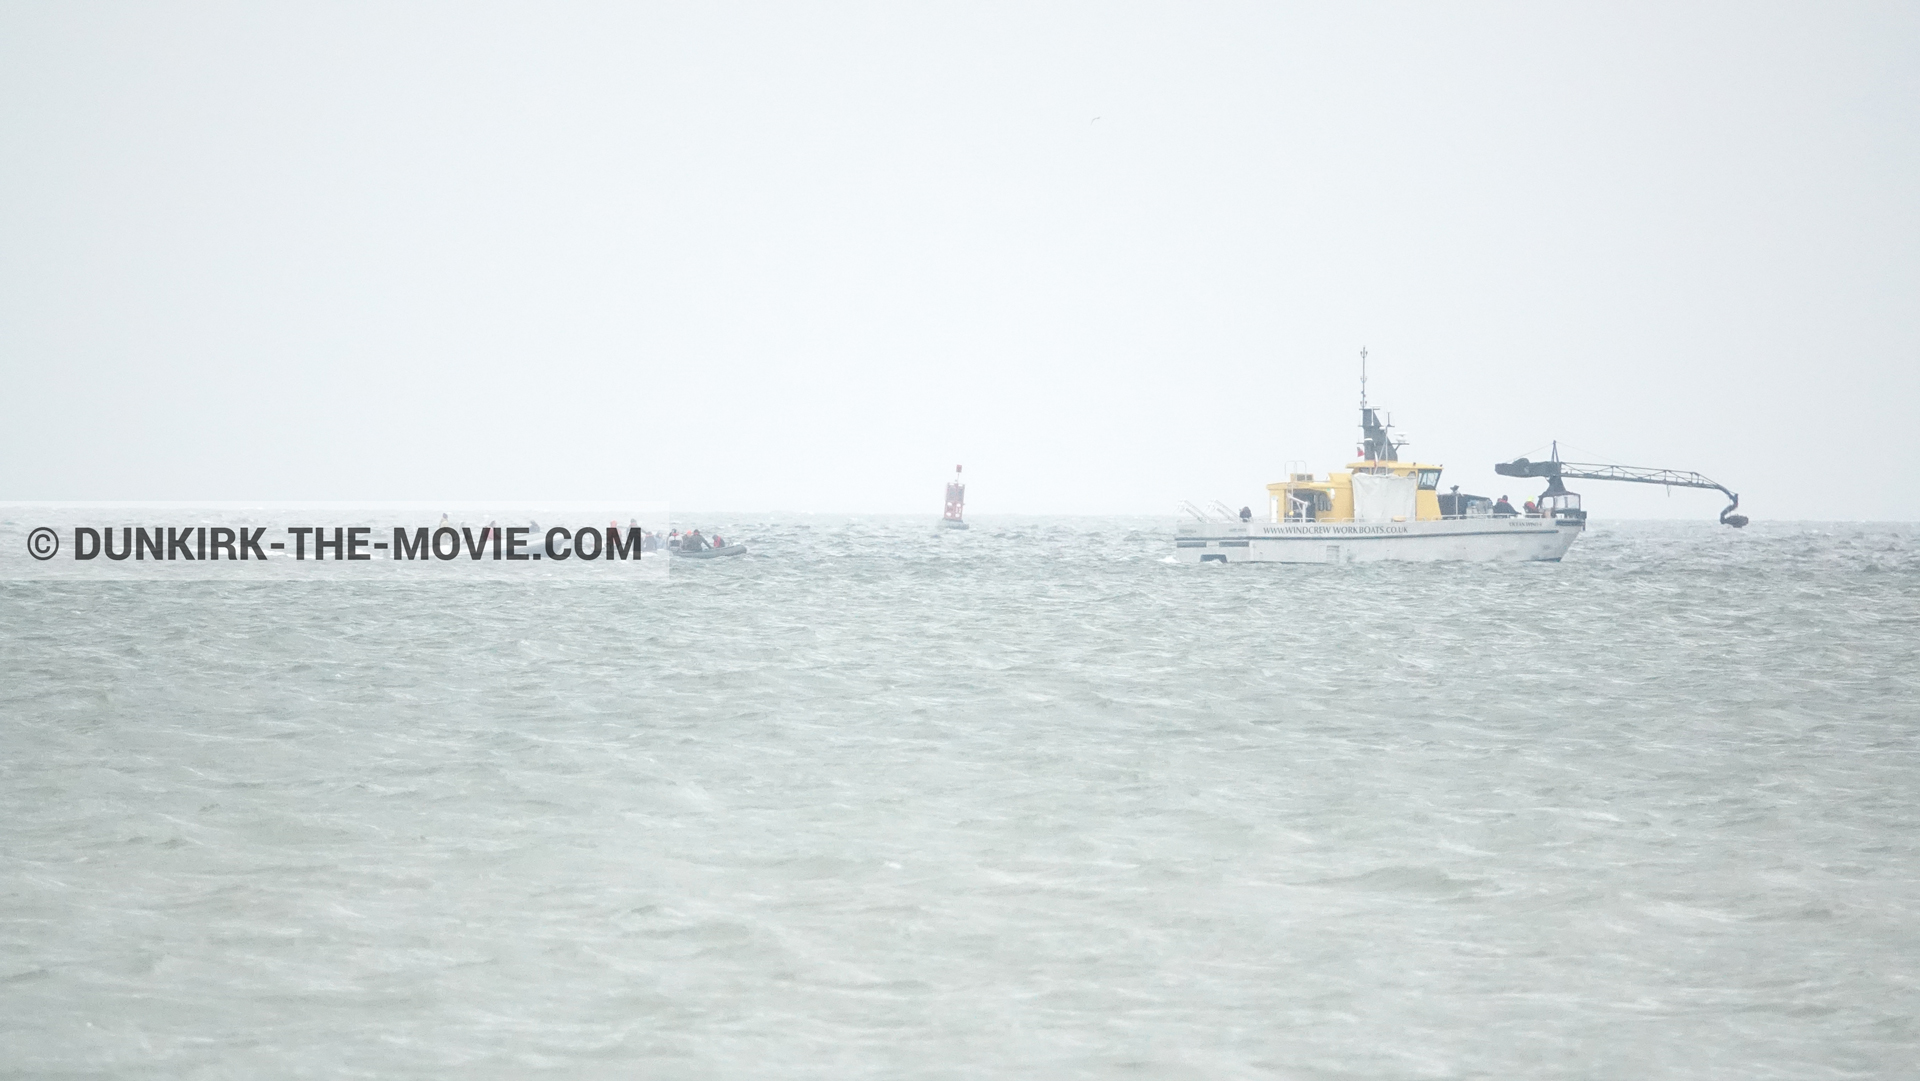 Fotos con Ocean Wind 4, zodiaco,  durante el rodaje de la película Dunkerque de Nolan